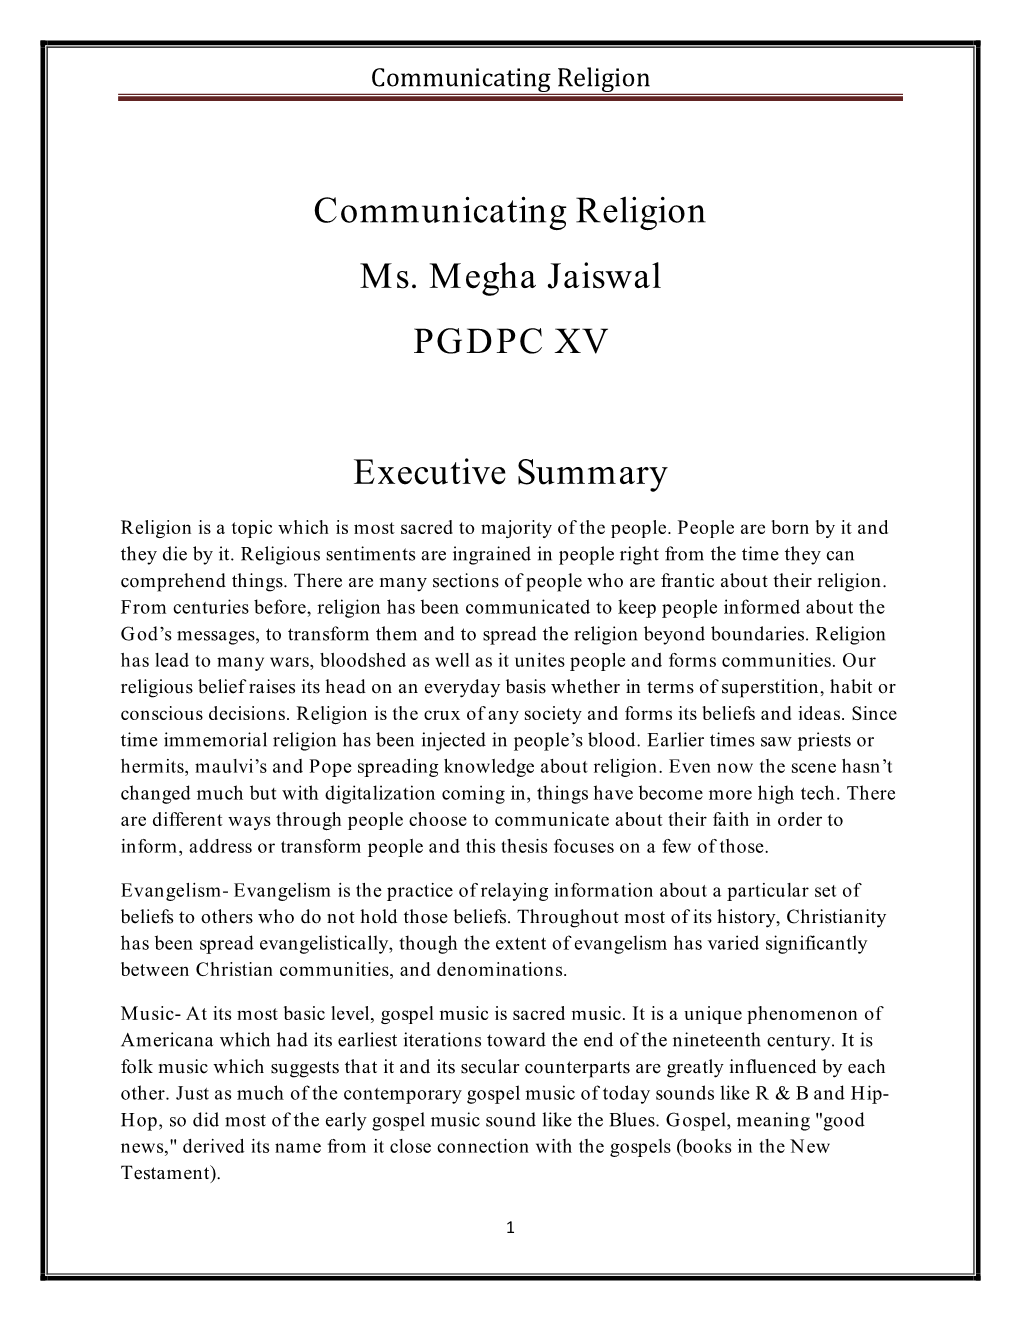 Communicating Religion Ms. Megha Jaiswal PGDPC XV Executive